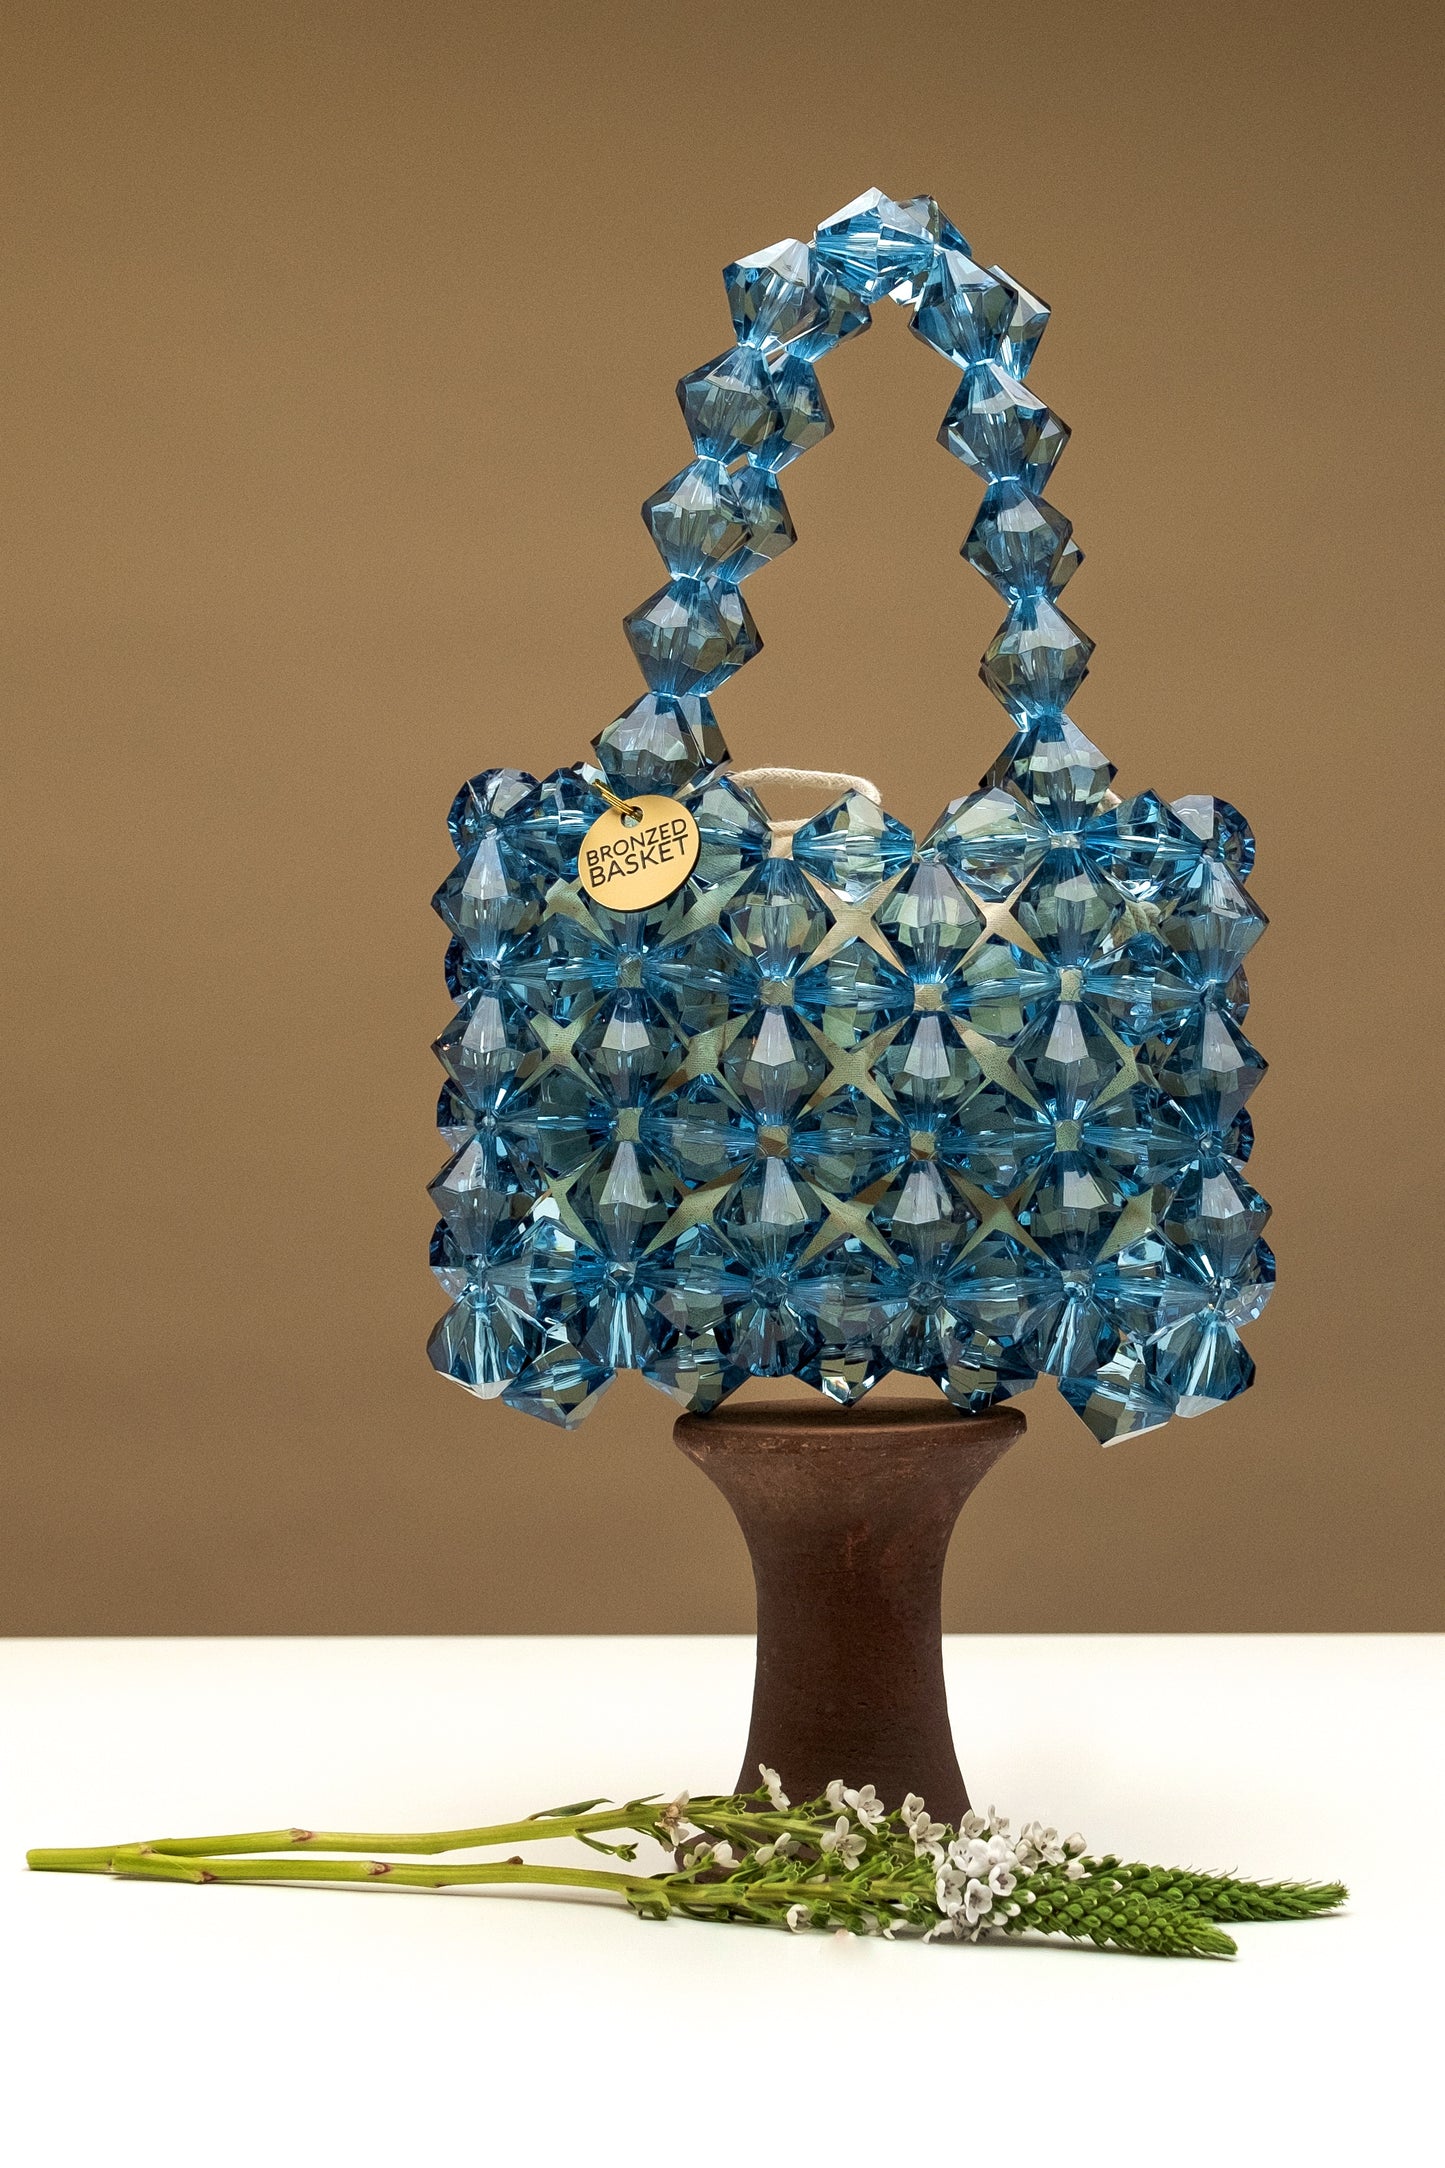 the crystal blue beaded bag